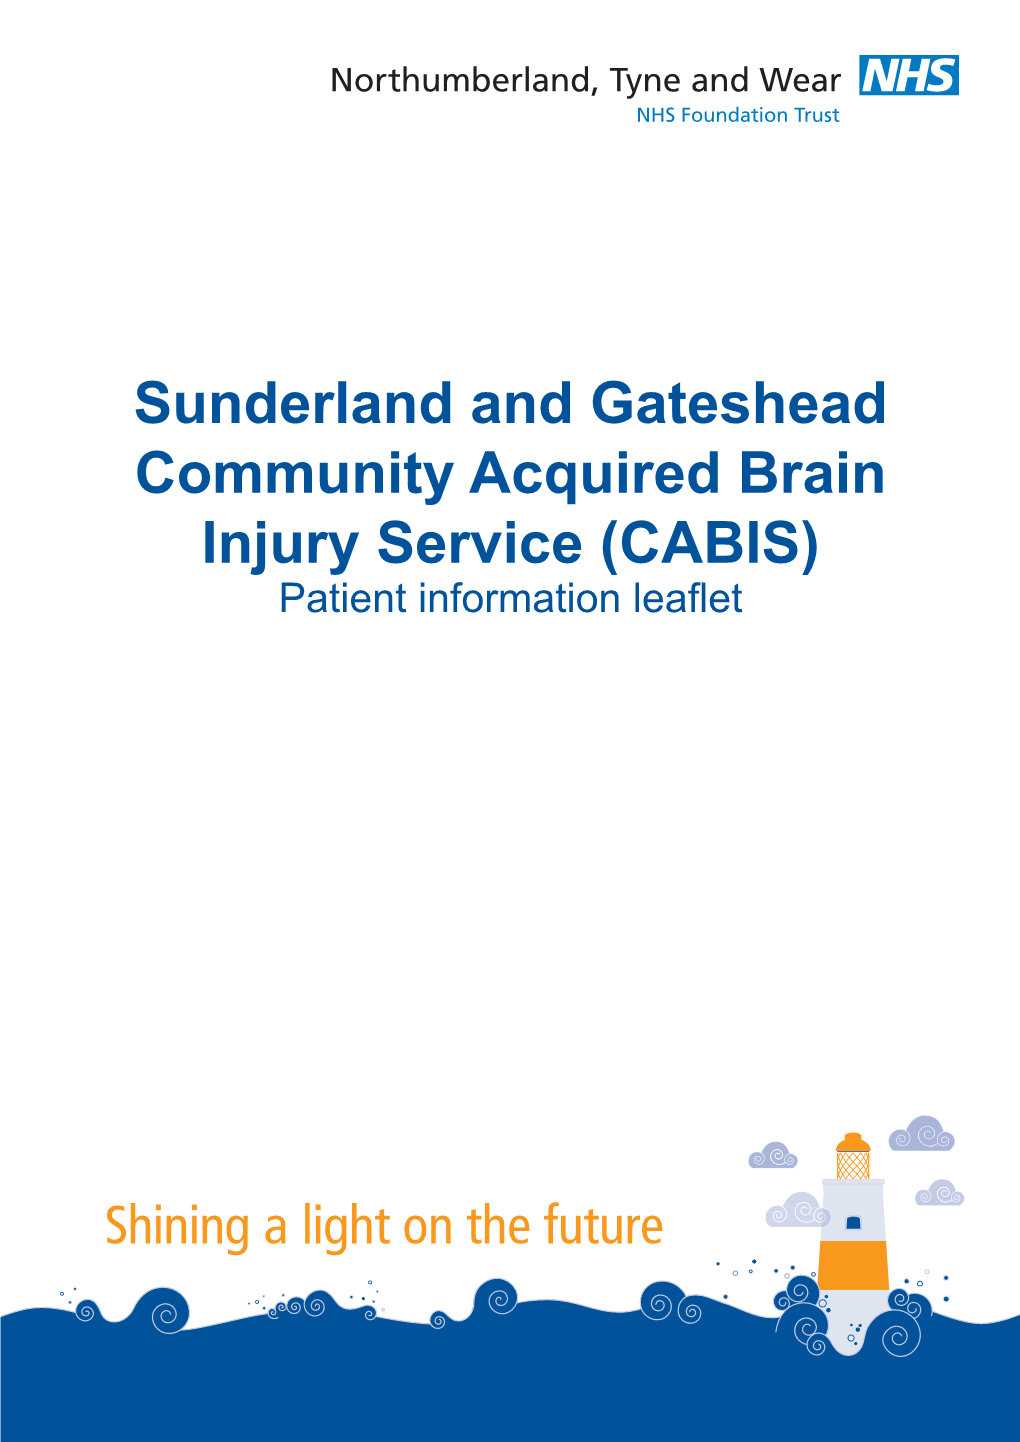 CABIS) Patient Information Leaflet